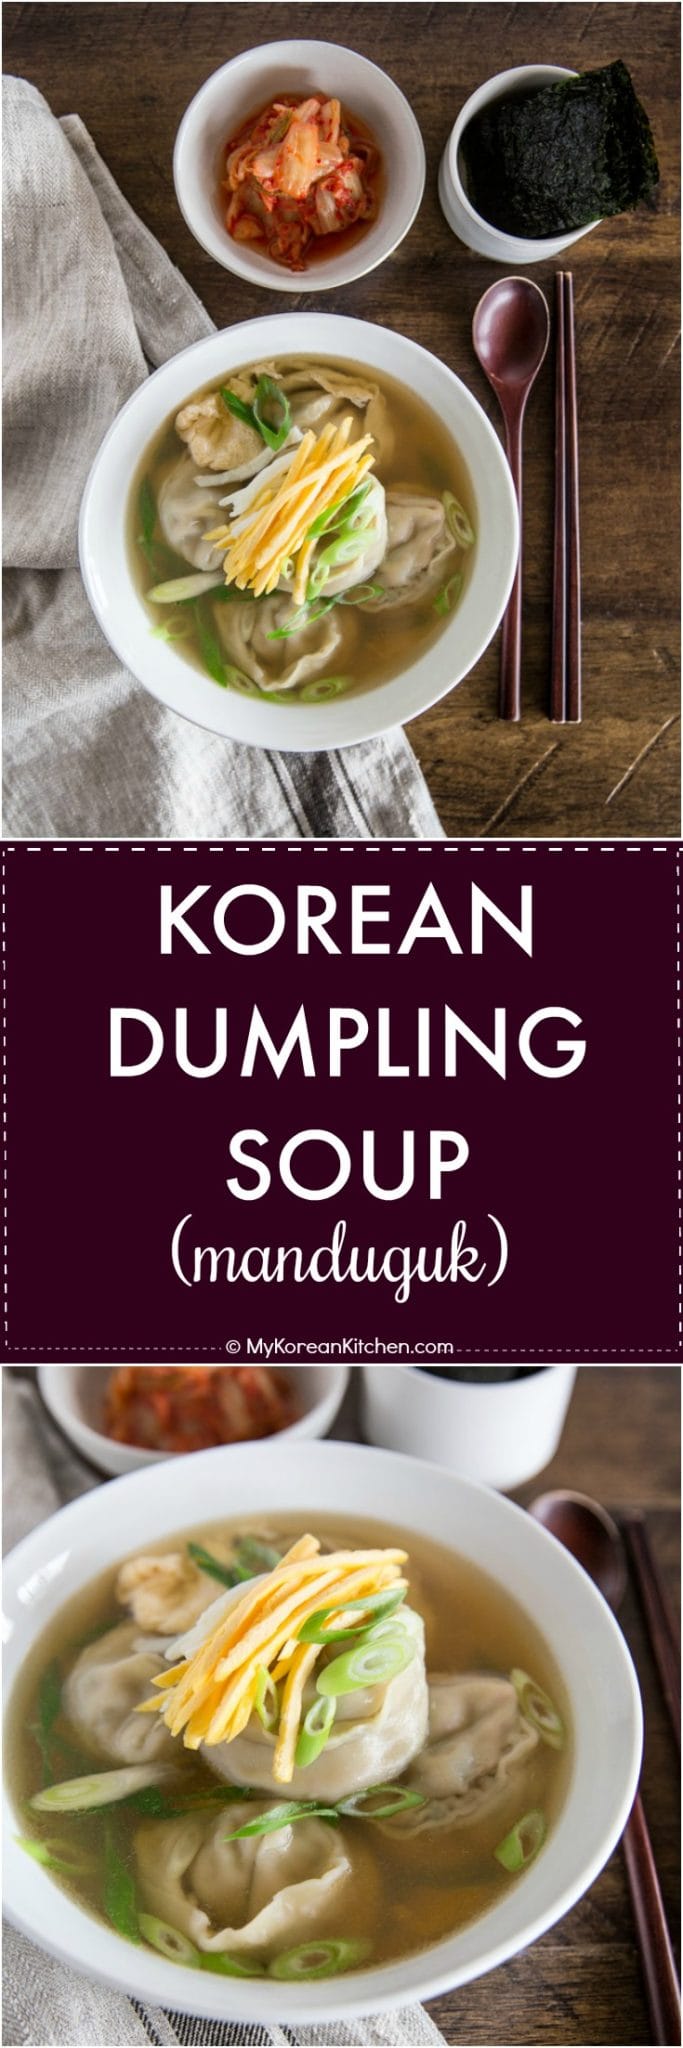 Manduguk (Korean Dumpling Soup) - My Korean Kitchen